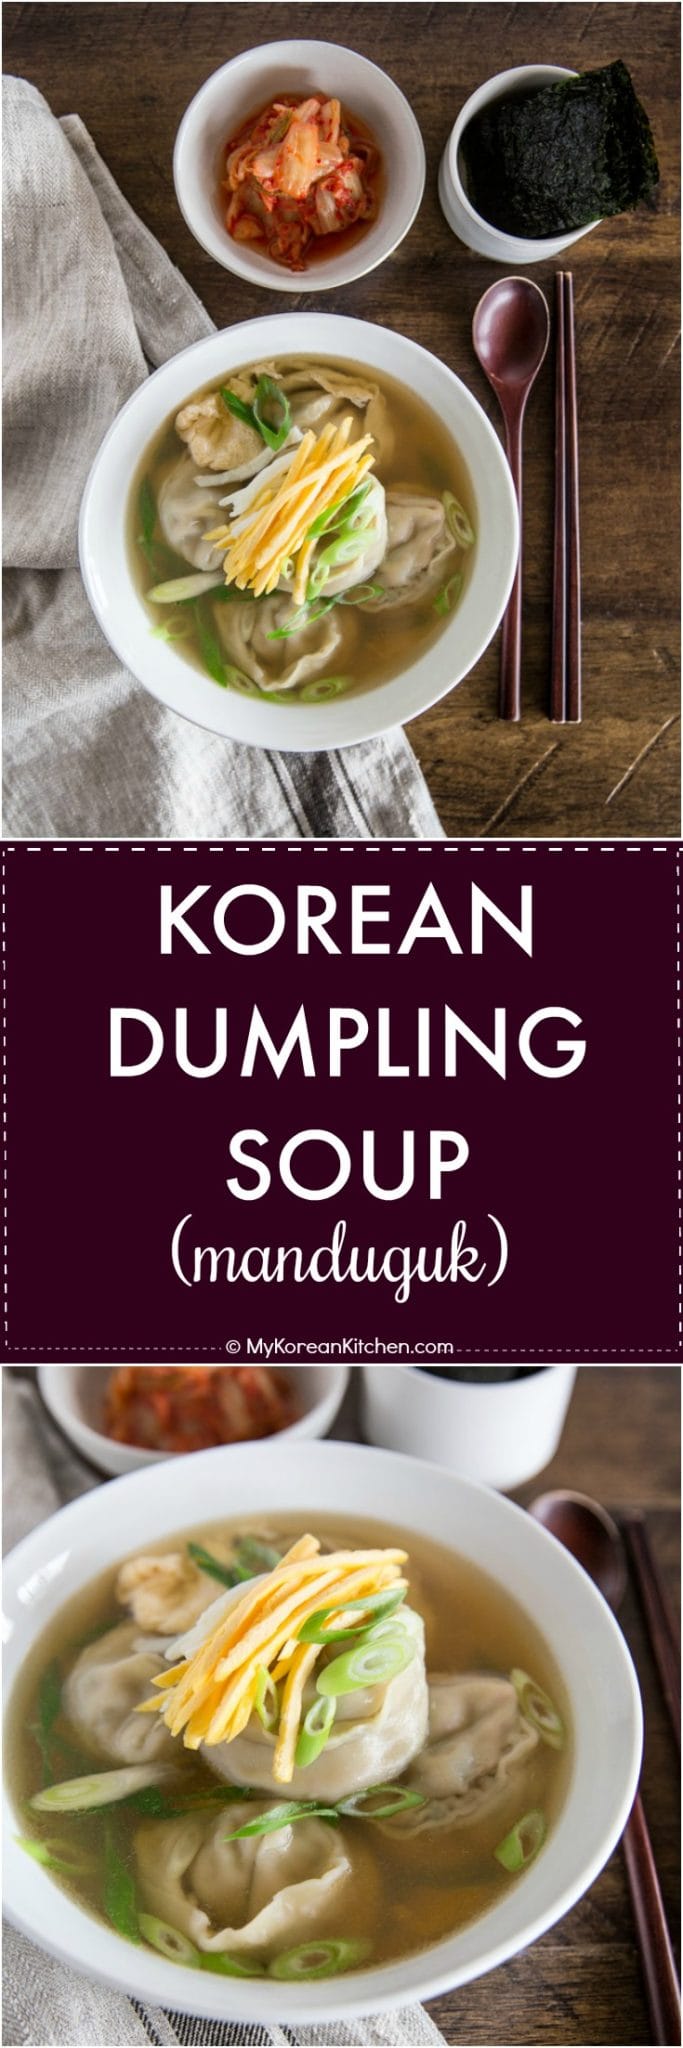 Manduguk (Korean Dumpling Soup) - My Korean Kitchen